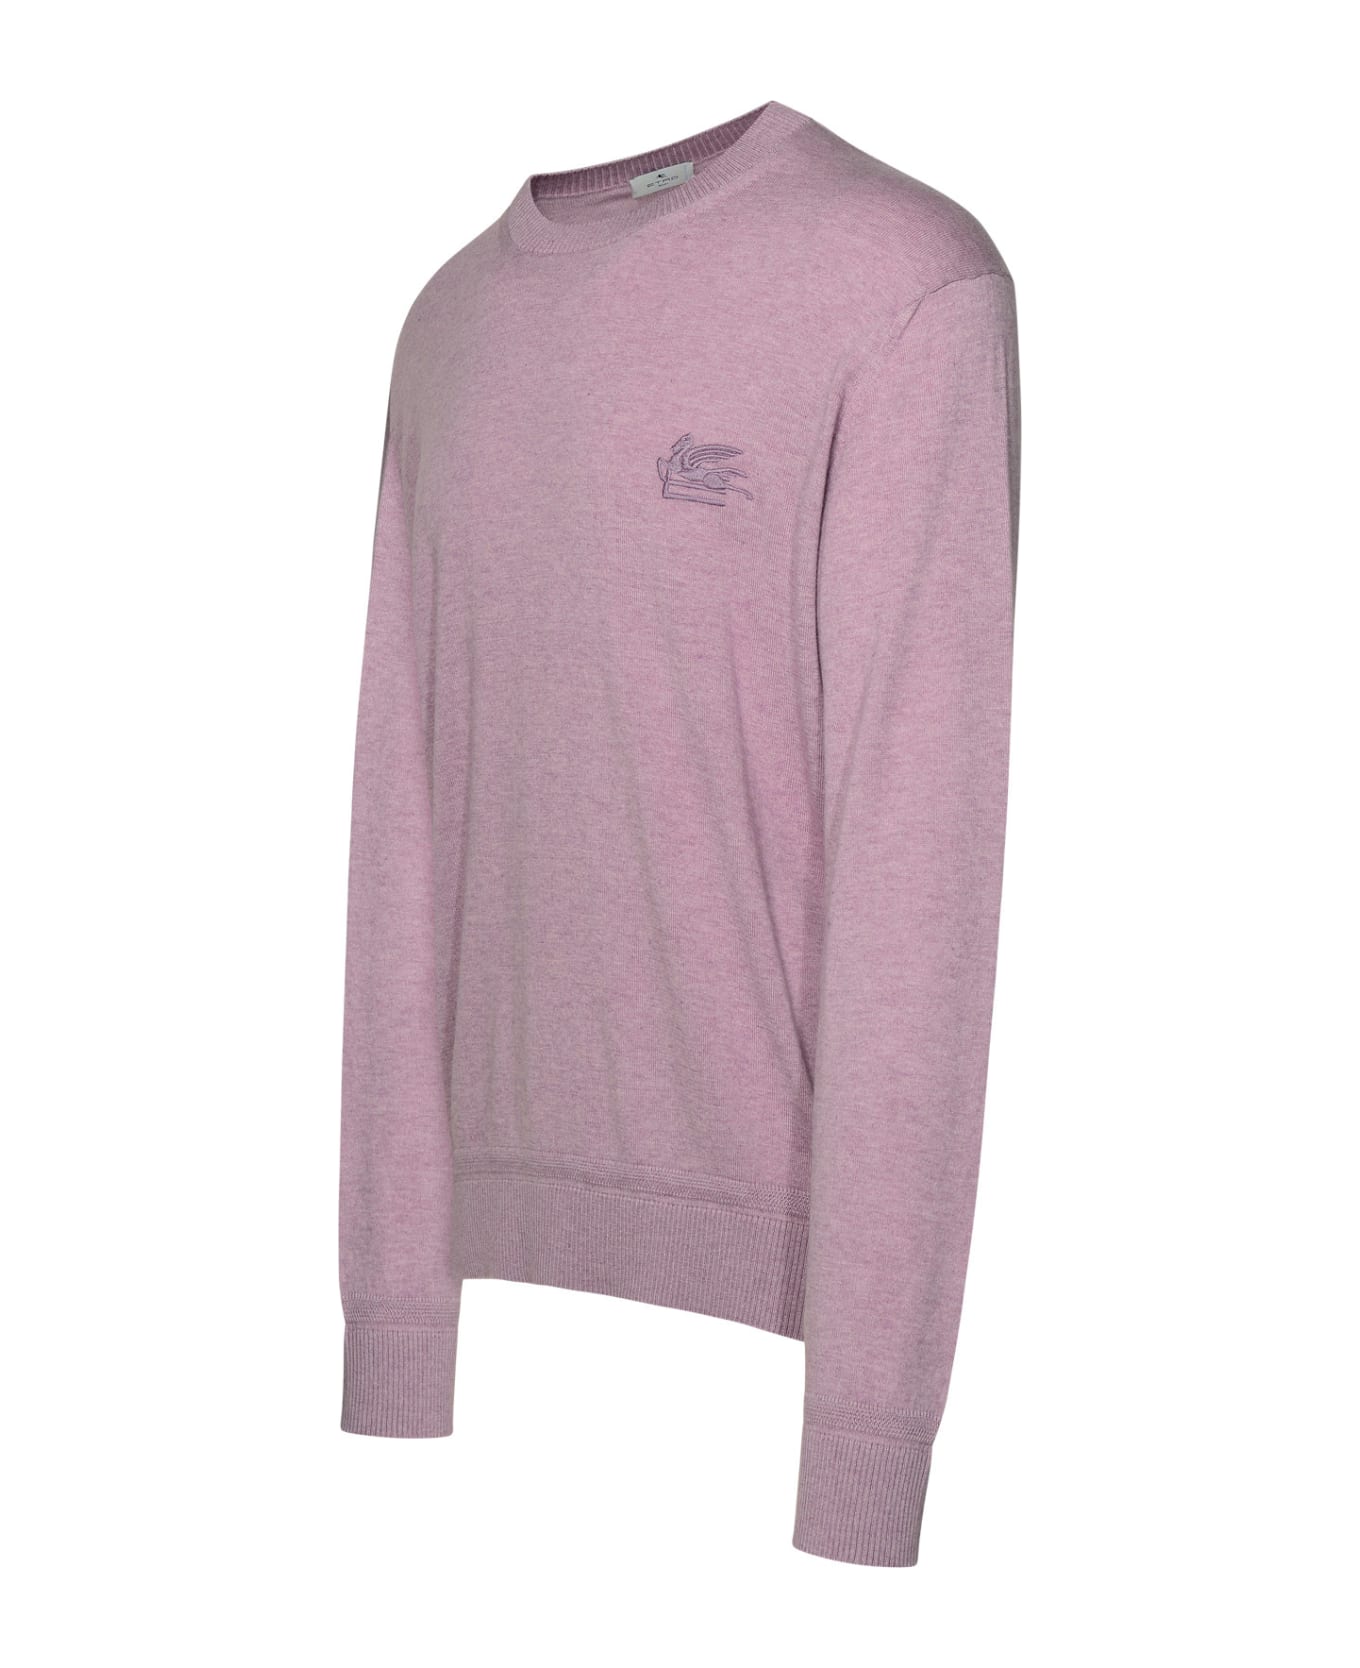 Etro Lilac Cotton Blend Sweater - Lilla